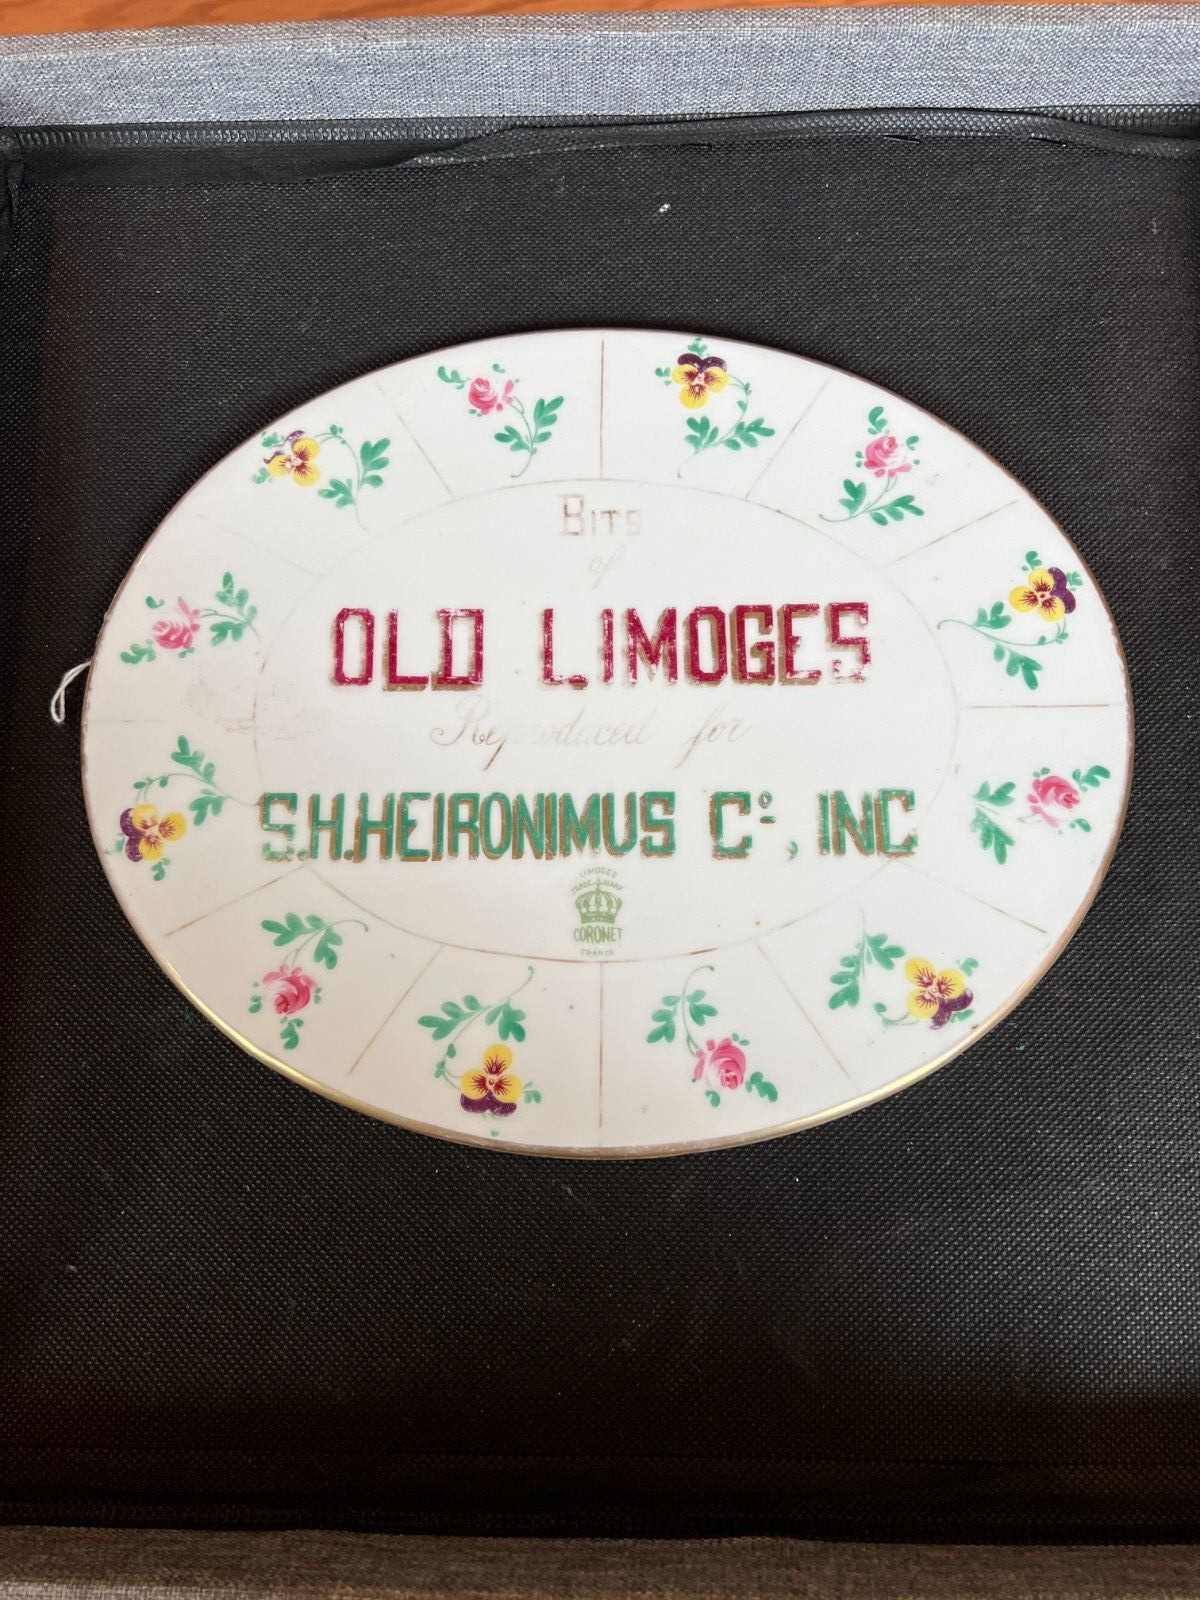 RARE Antique Limoges Porcelain Sign SH Heironimus Co INC Cornet France